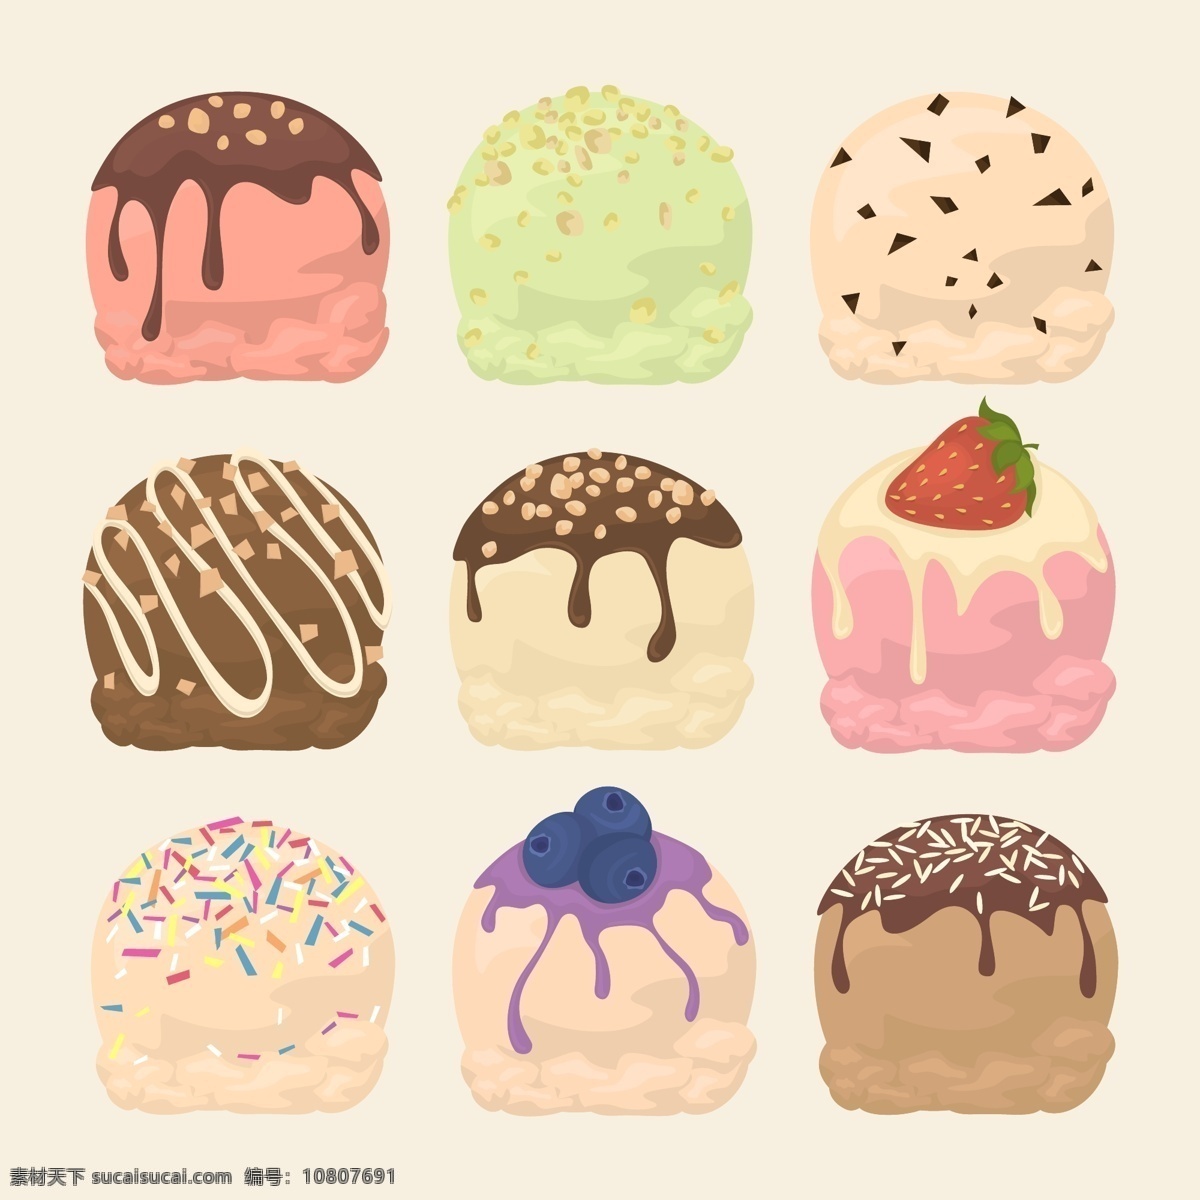 美味 蛋糕 甜品 图标 巧克力 元素 草莓 篮莓